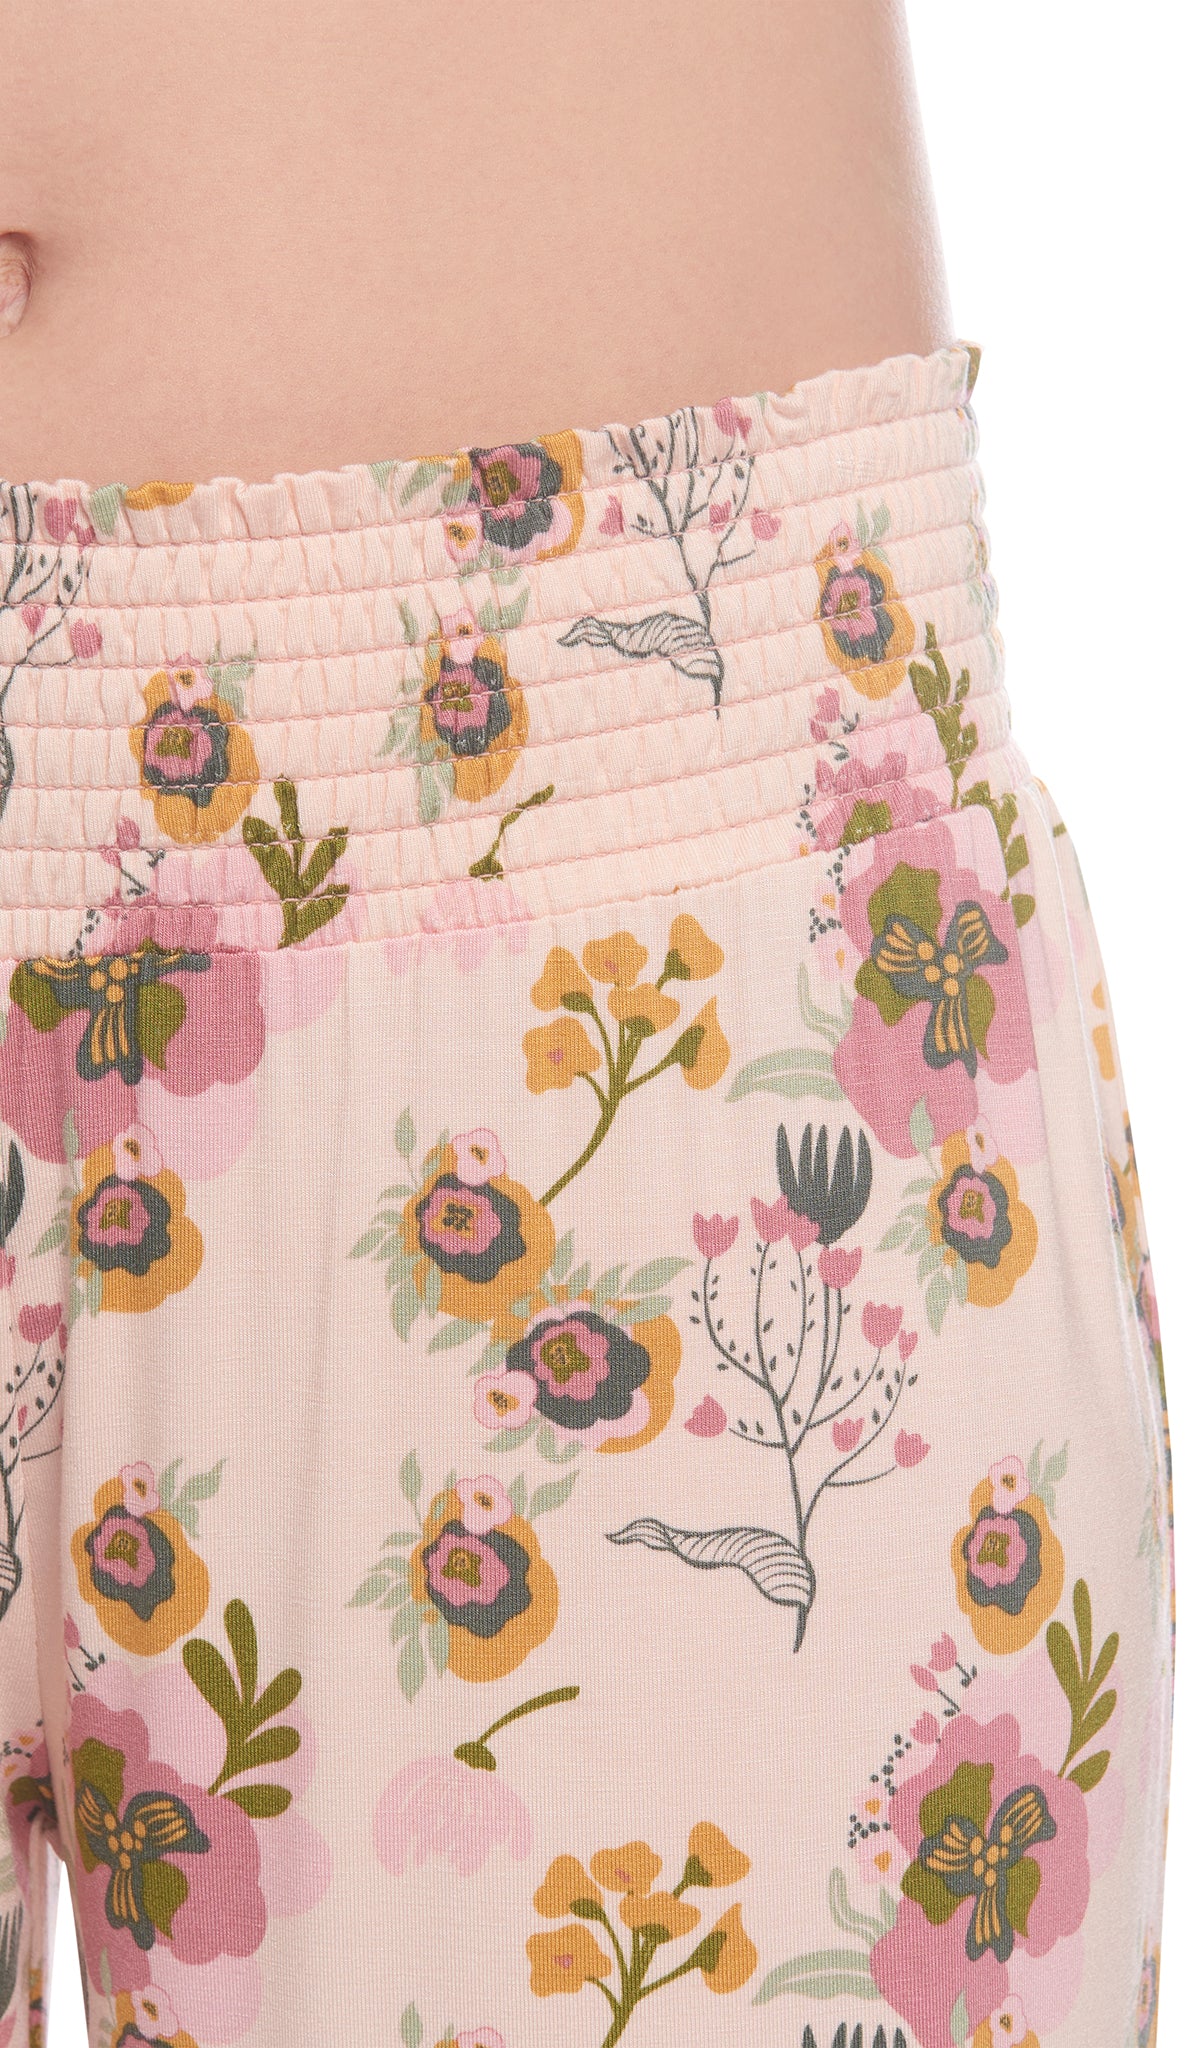 Camellia Analise 5-Piece Set, detailed shot of smocked elastic waistband.